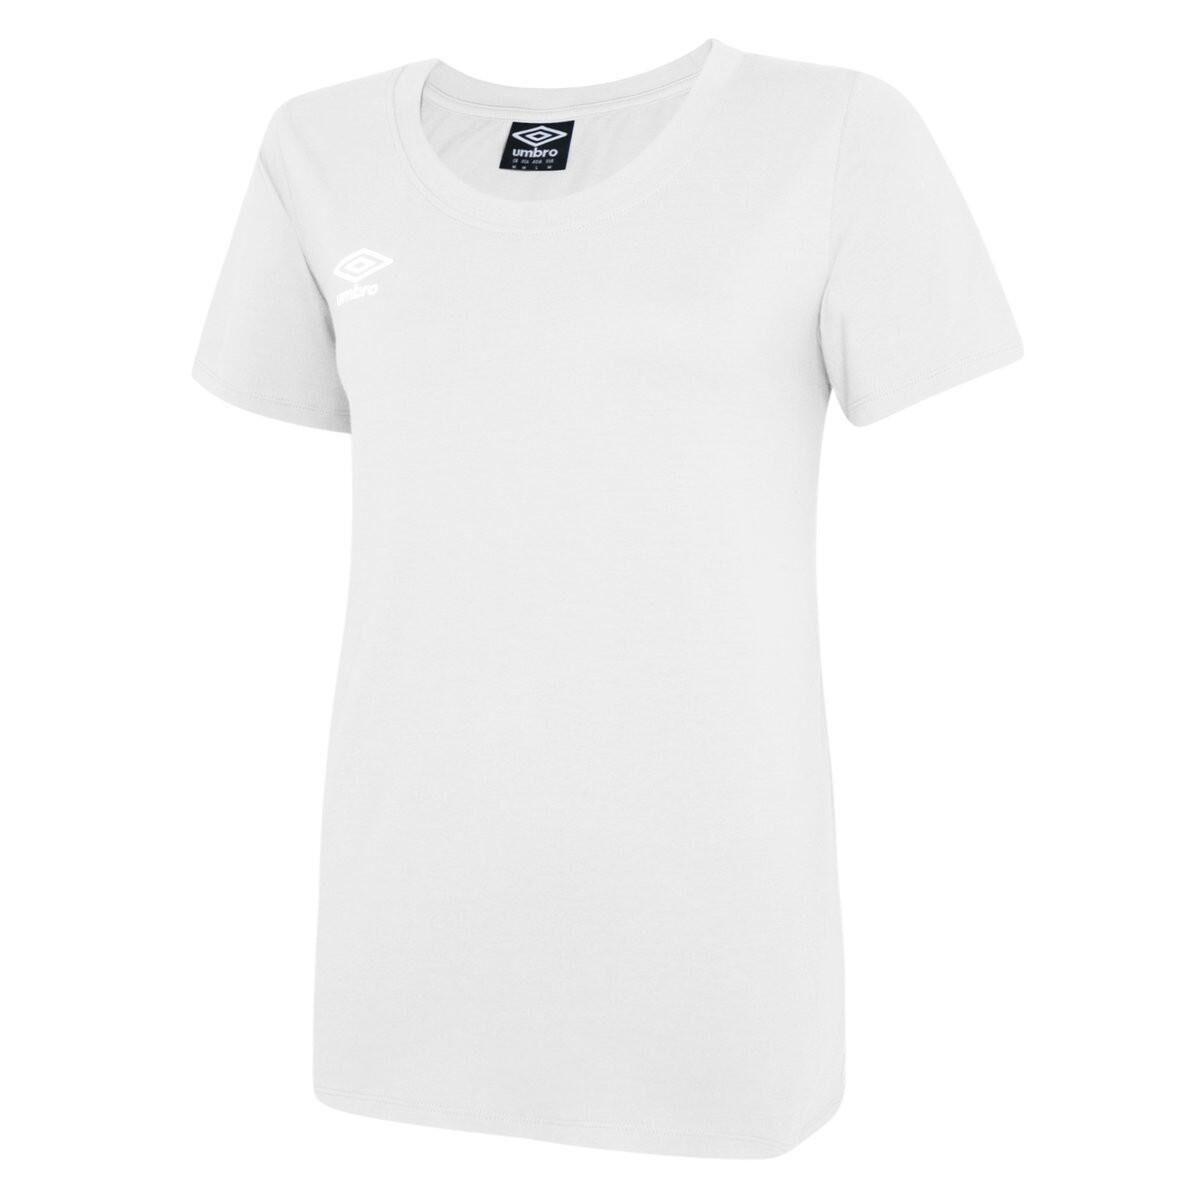 UMBRO Womens/Ladies Club Leisure TShirt (White/Black)